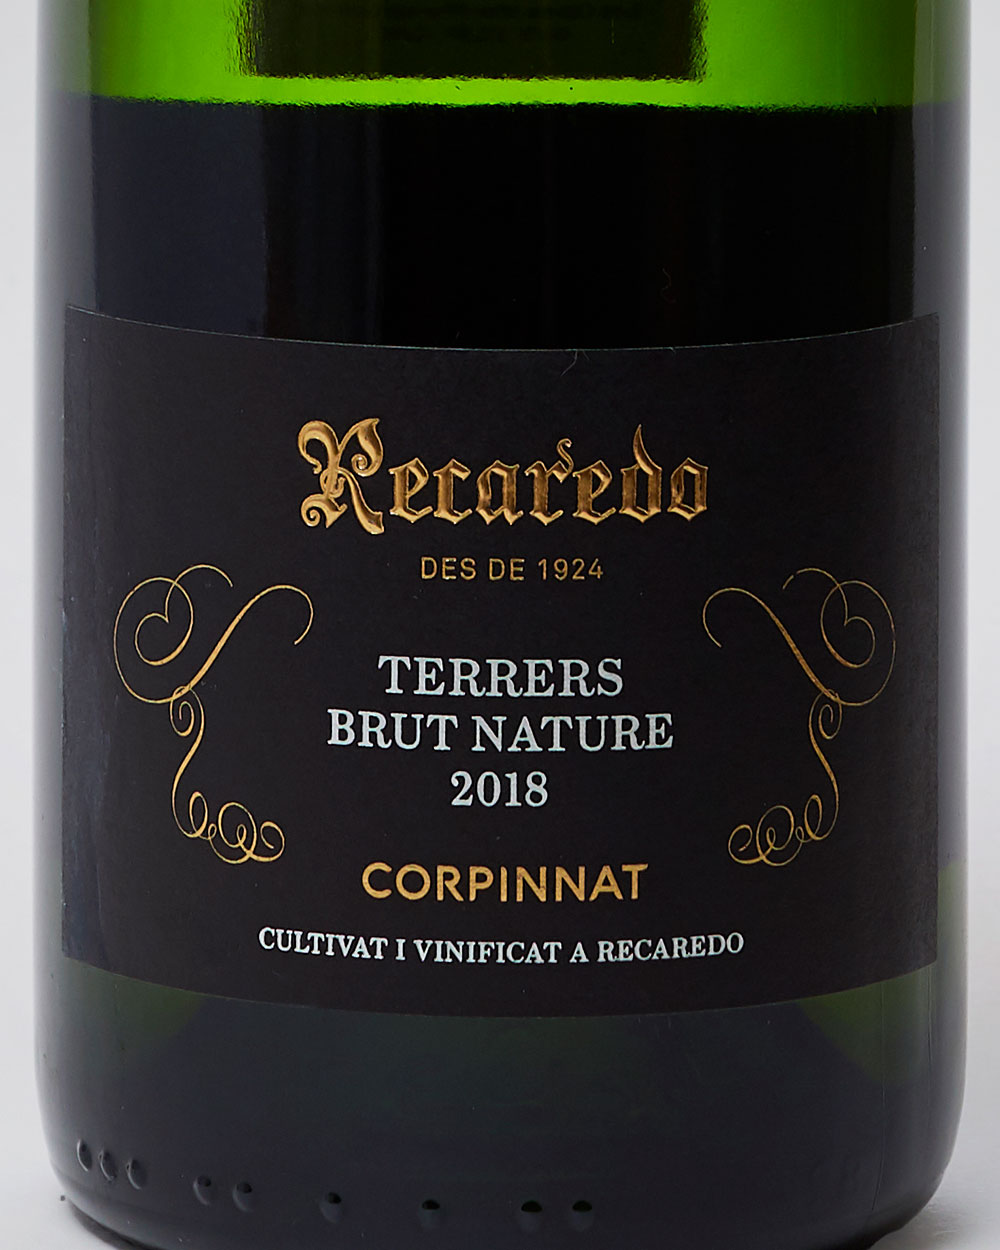 Recaredo Terrers Brut Nature 2018 Corpinnat label